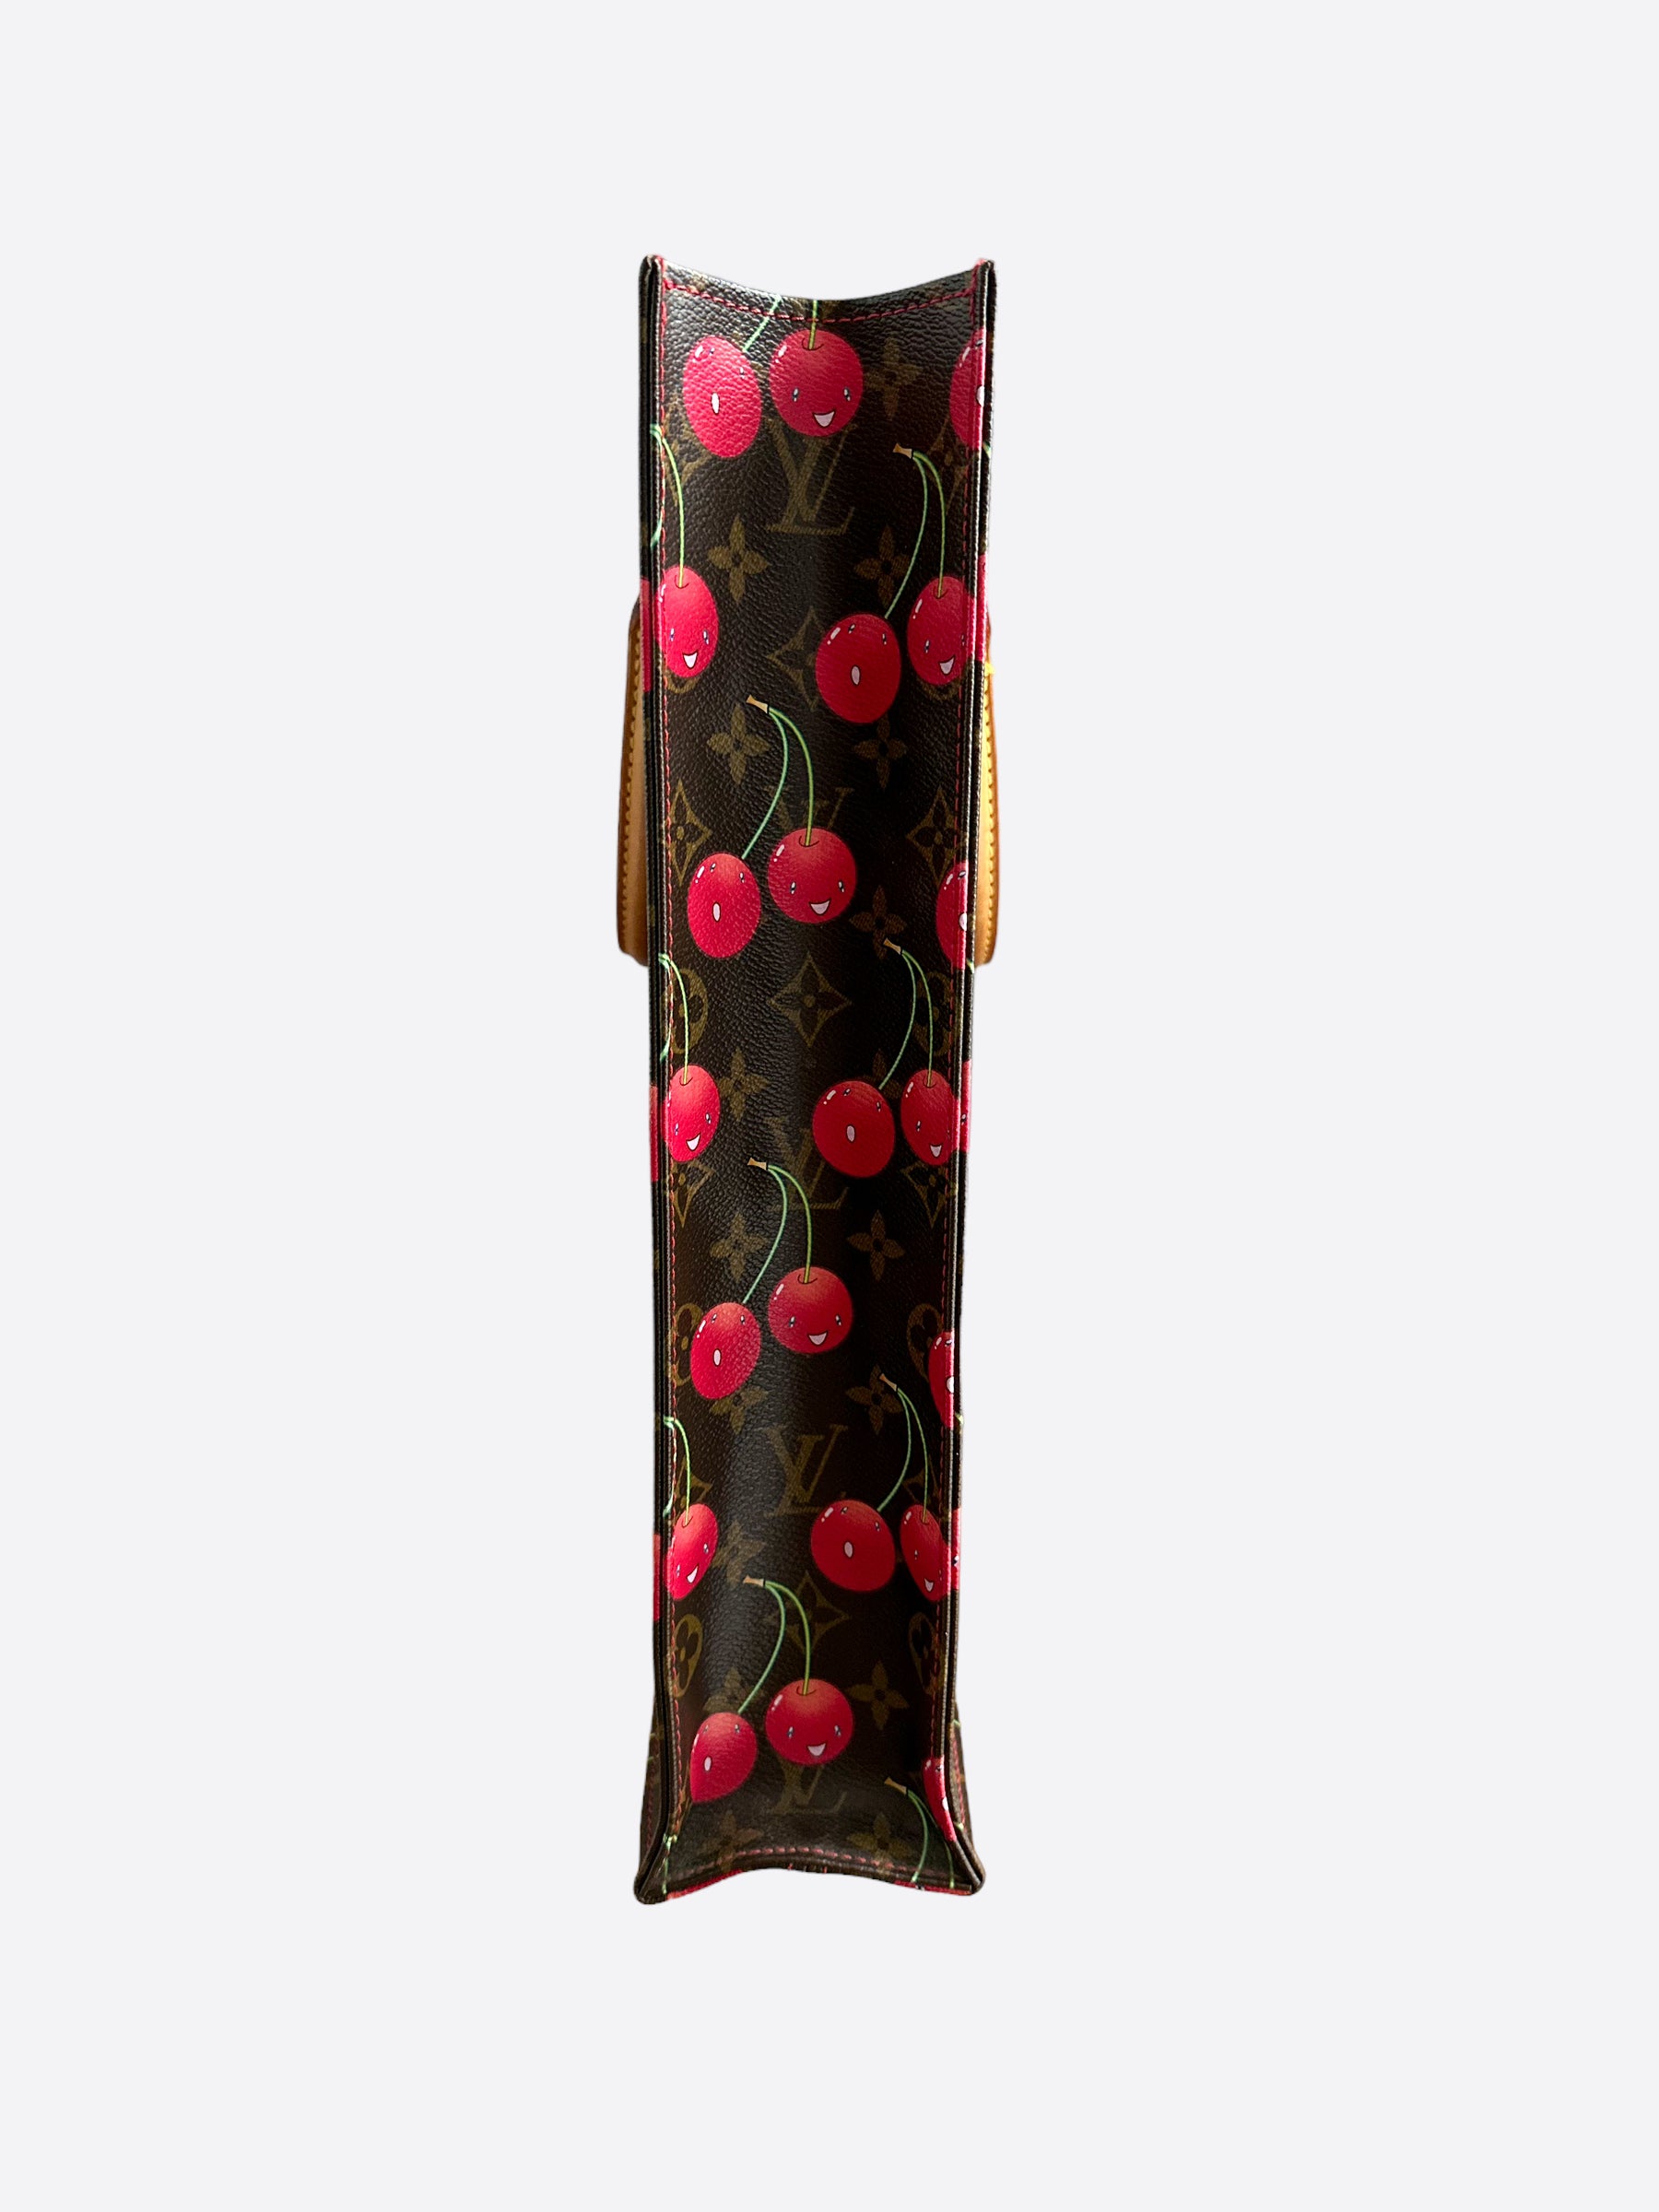 Louis Vuitton Takashi Murakami Cherry Keepall 45 – Savonches